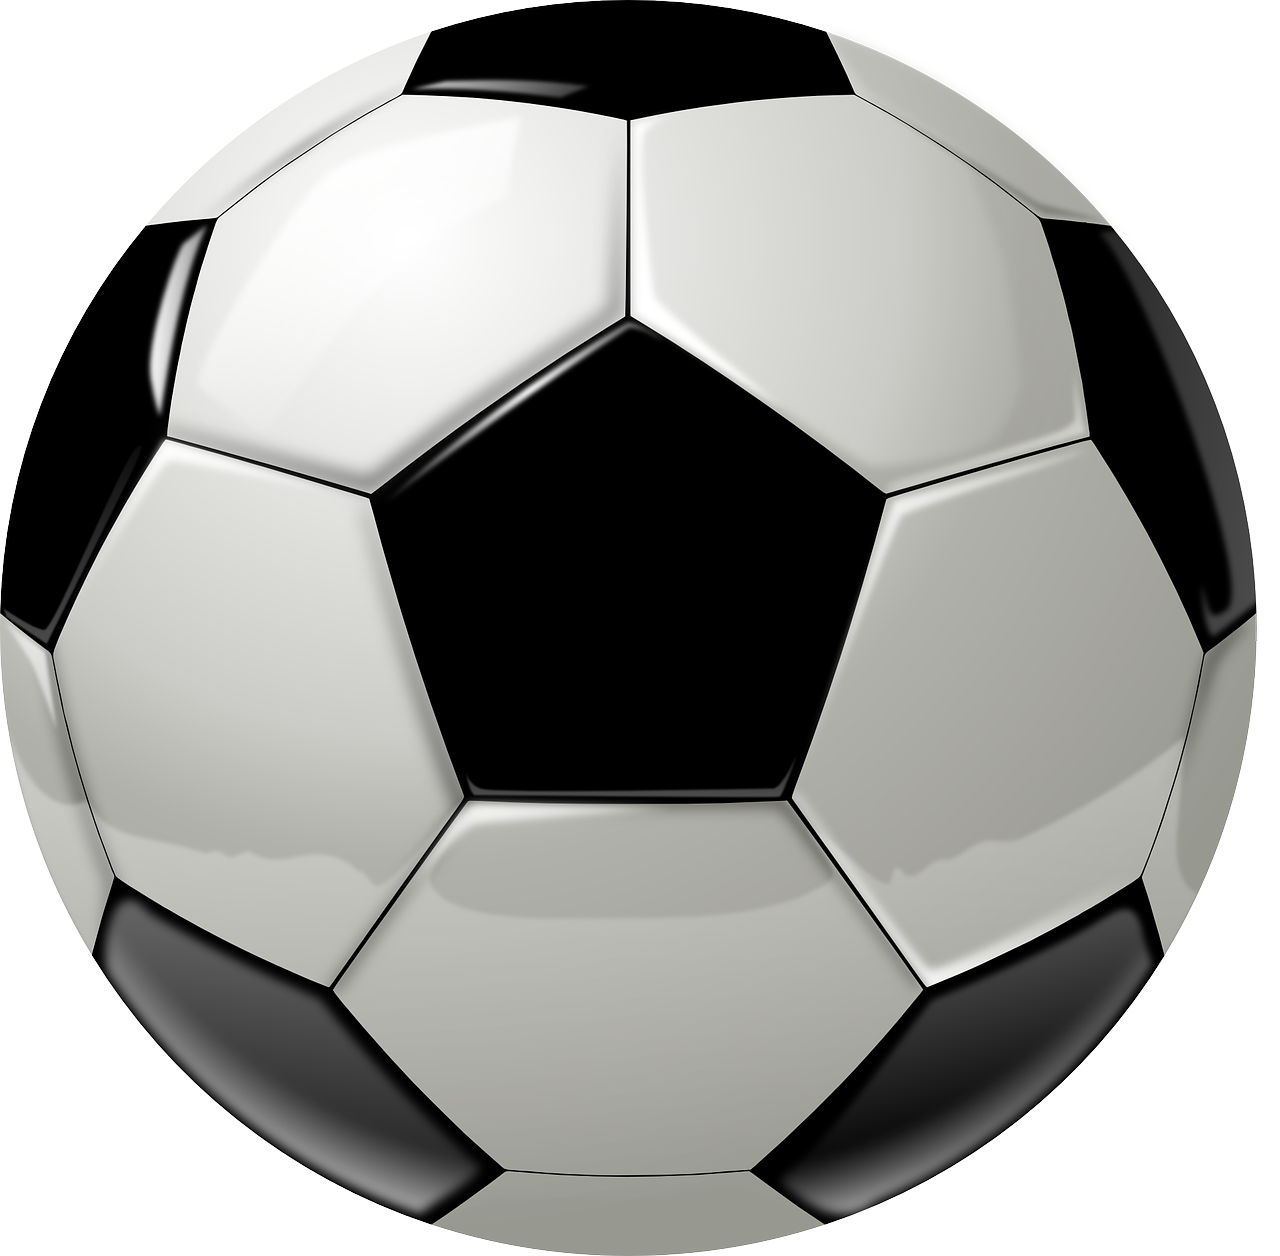 Fußball Quelle pixabay